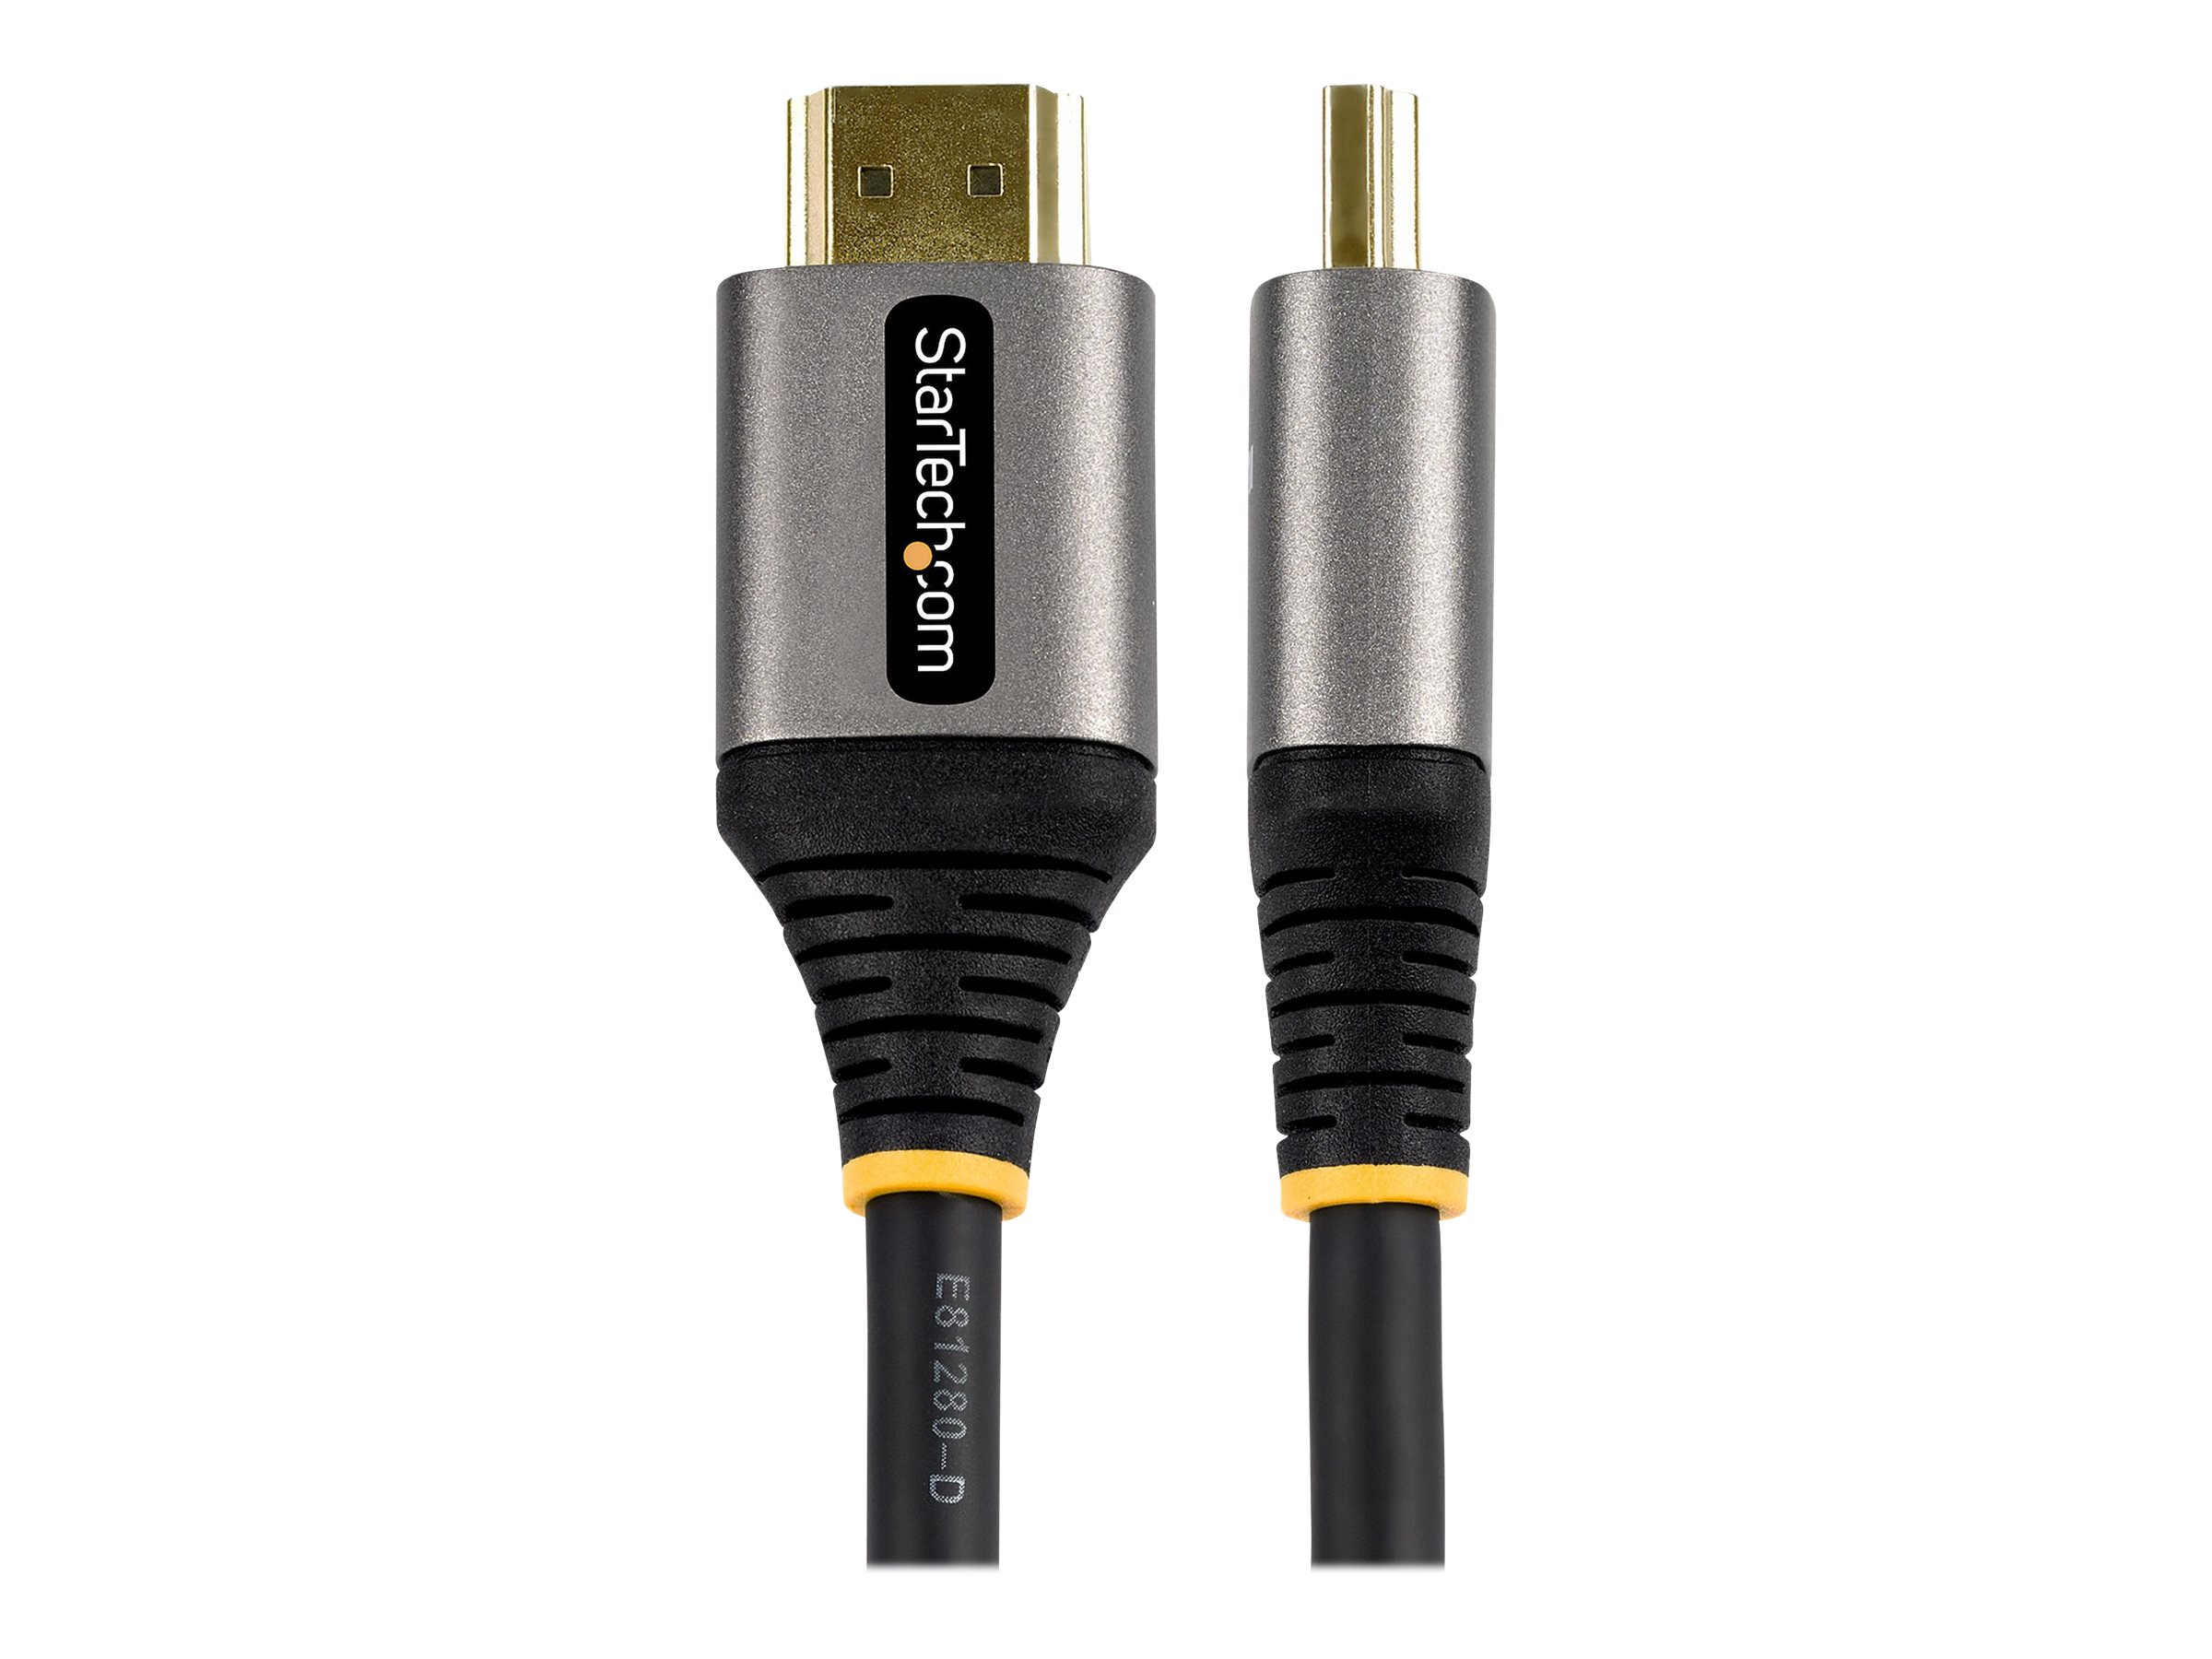 Câble Certifié HDMI 2.1 8K - 5m - 8K/4K - Câbles HDMI® et adaptateurs HDMI